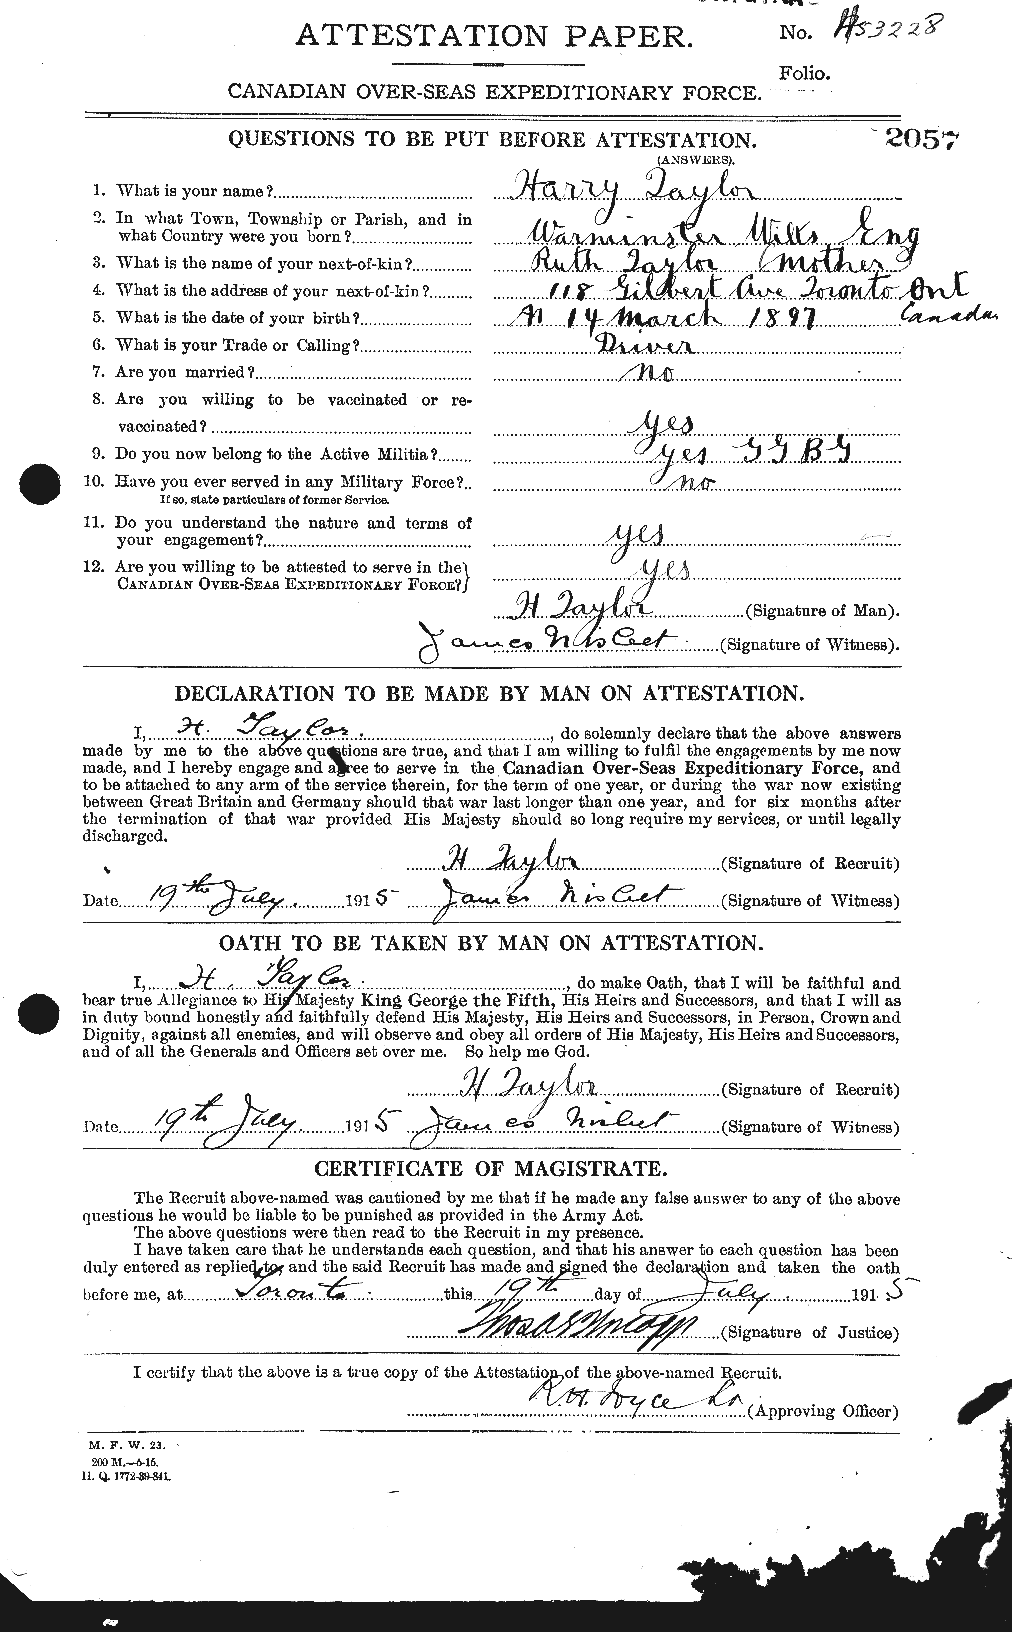 Dossiers du Personnel de la Première Guerre mondiale - CEC 626469a